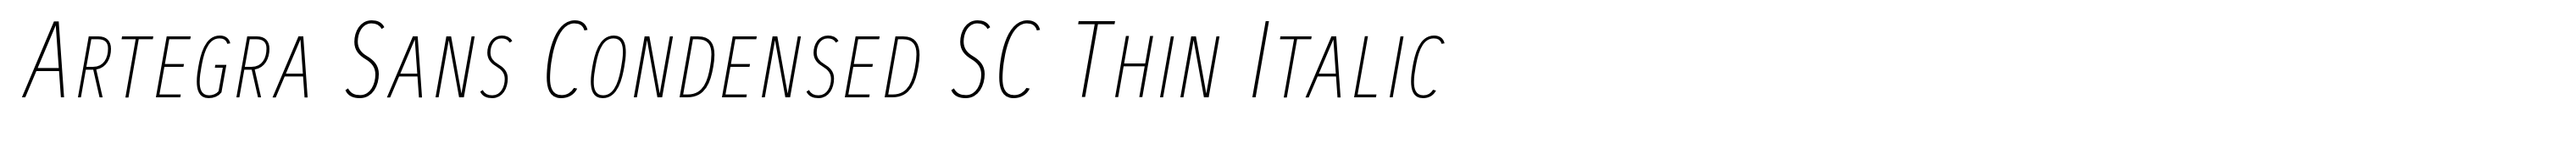 Artegra Sans Condensed SC Thin Italic